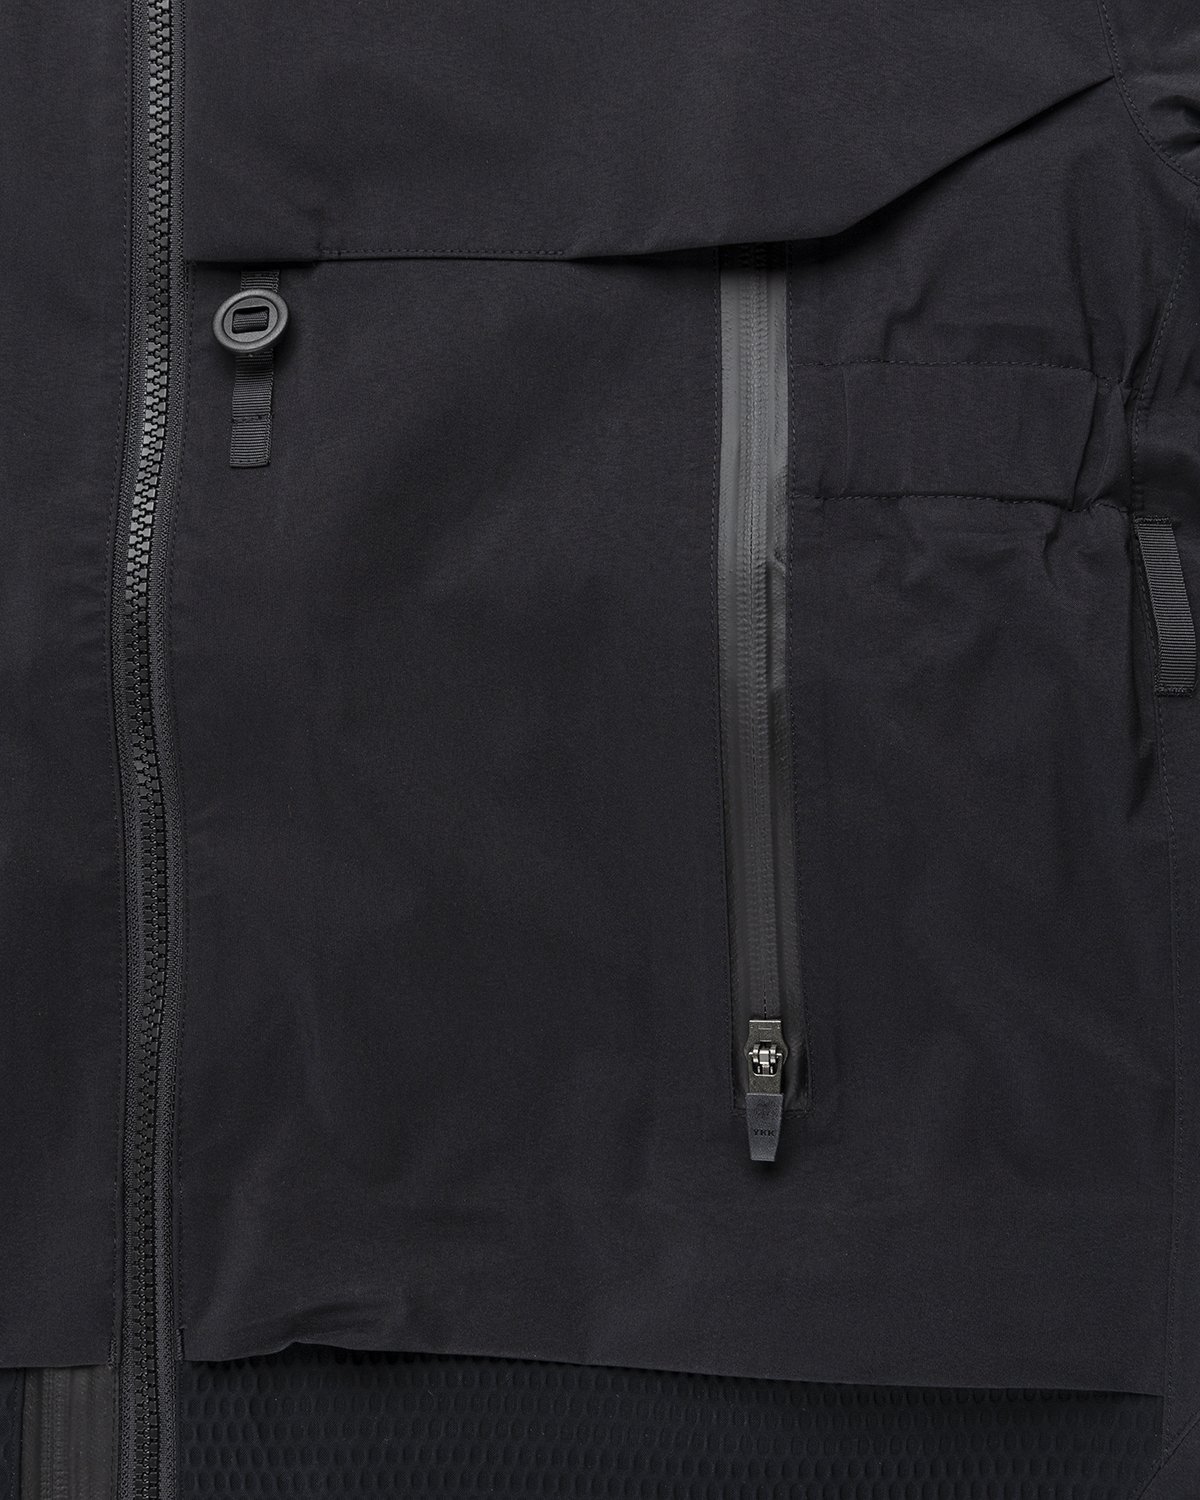 ACRONYM - J16-GT Jacket Black - Clothing - Black - Image 4